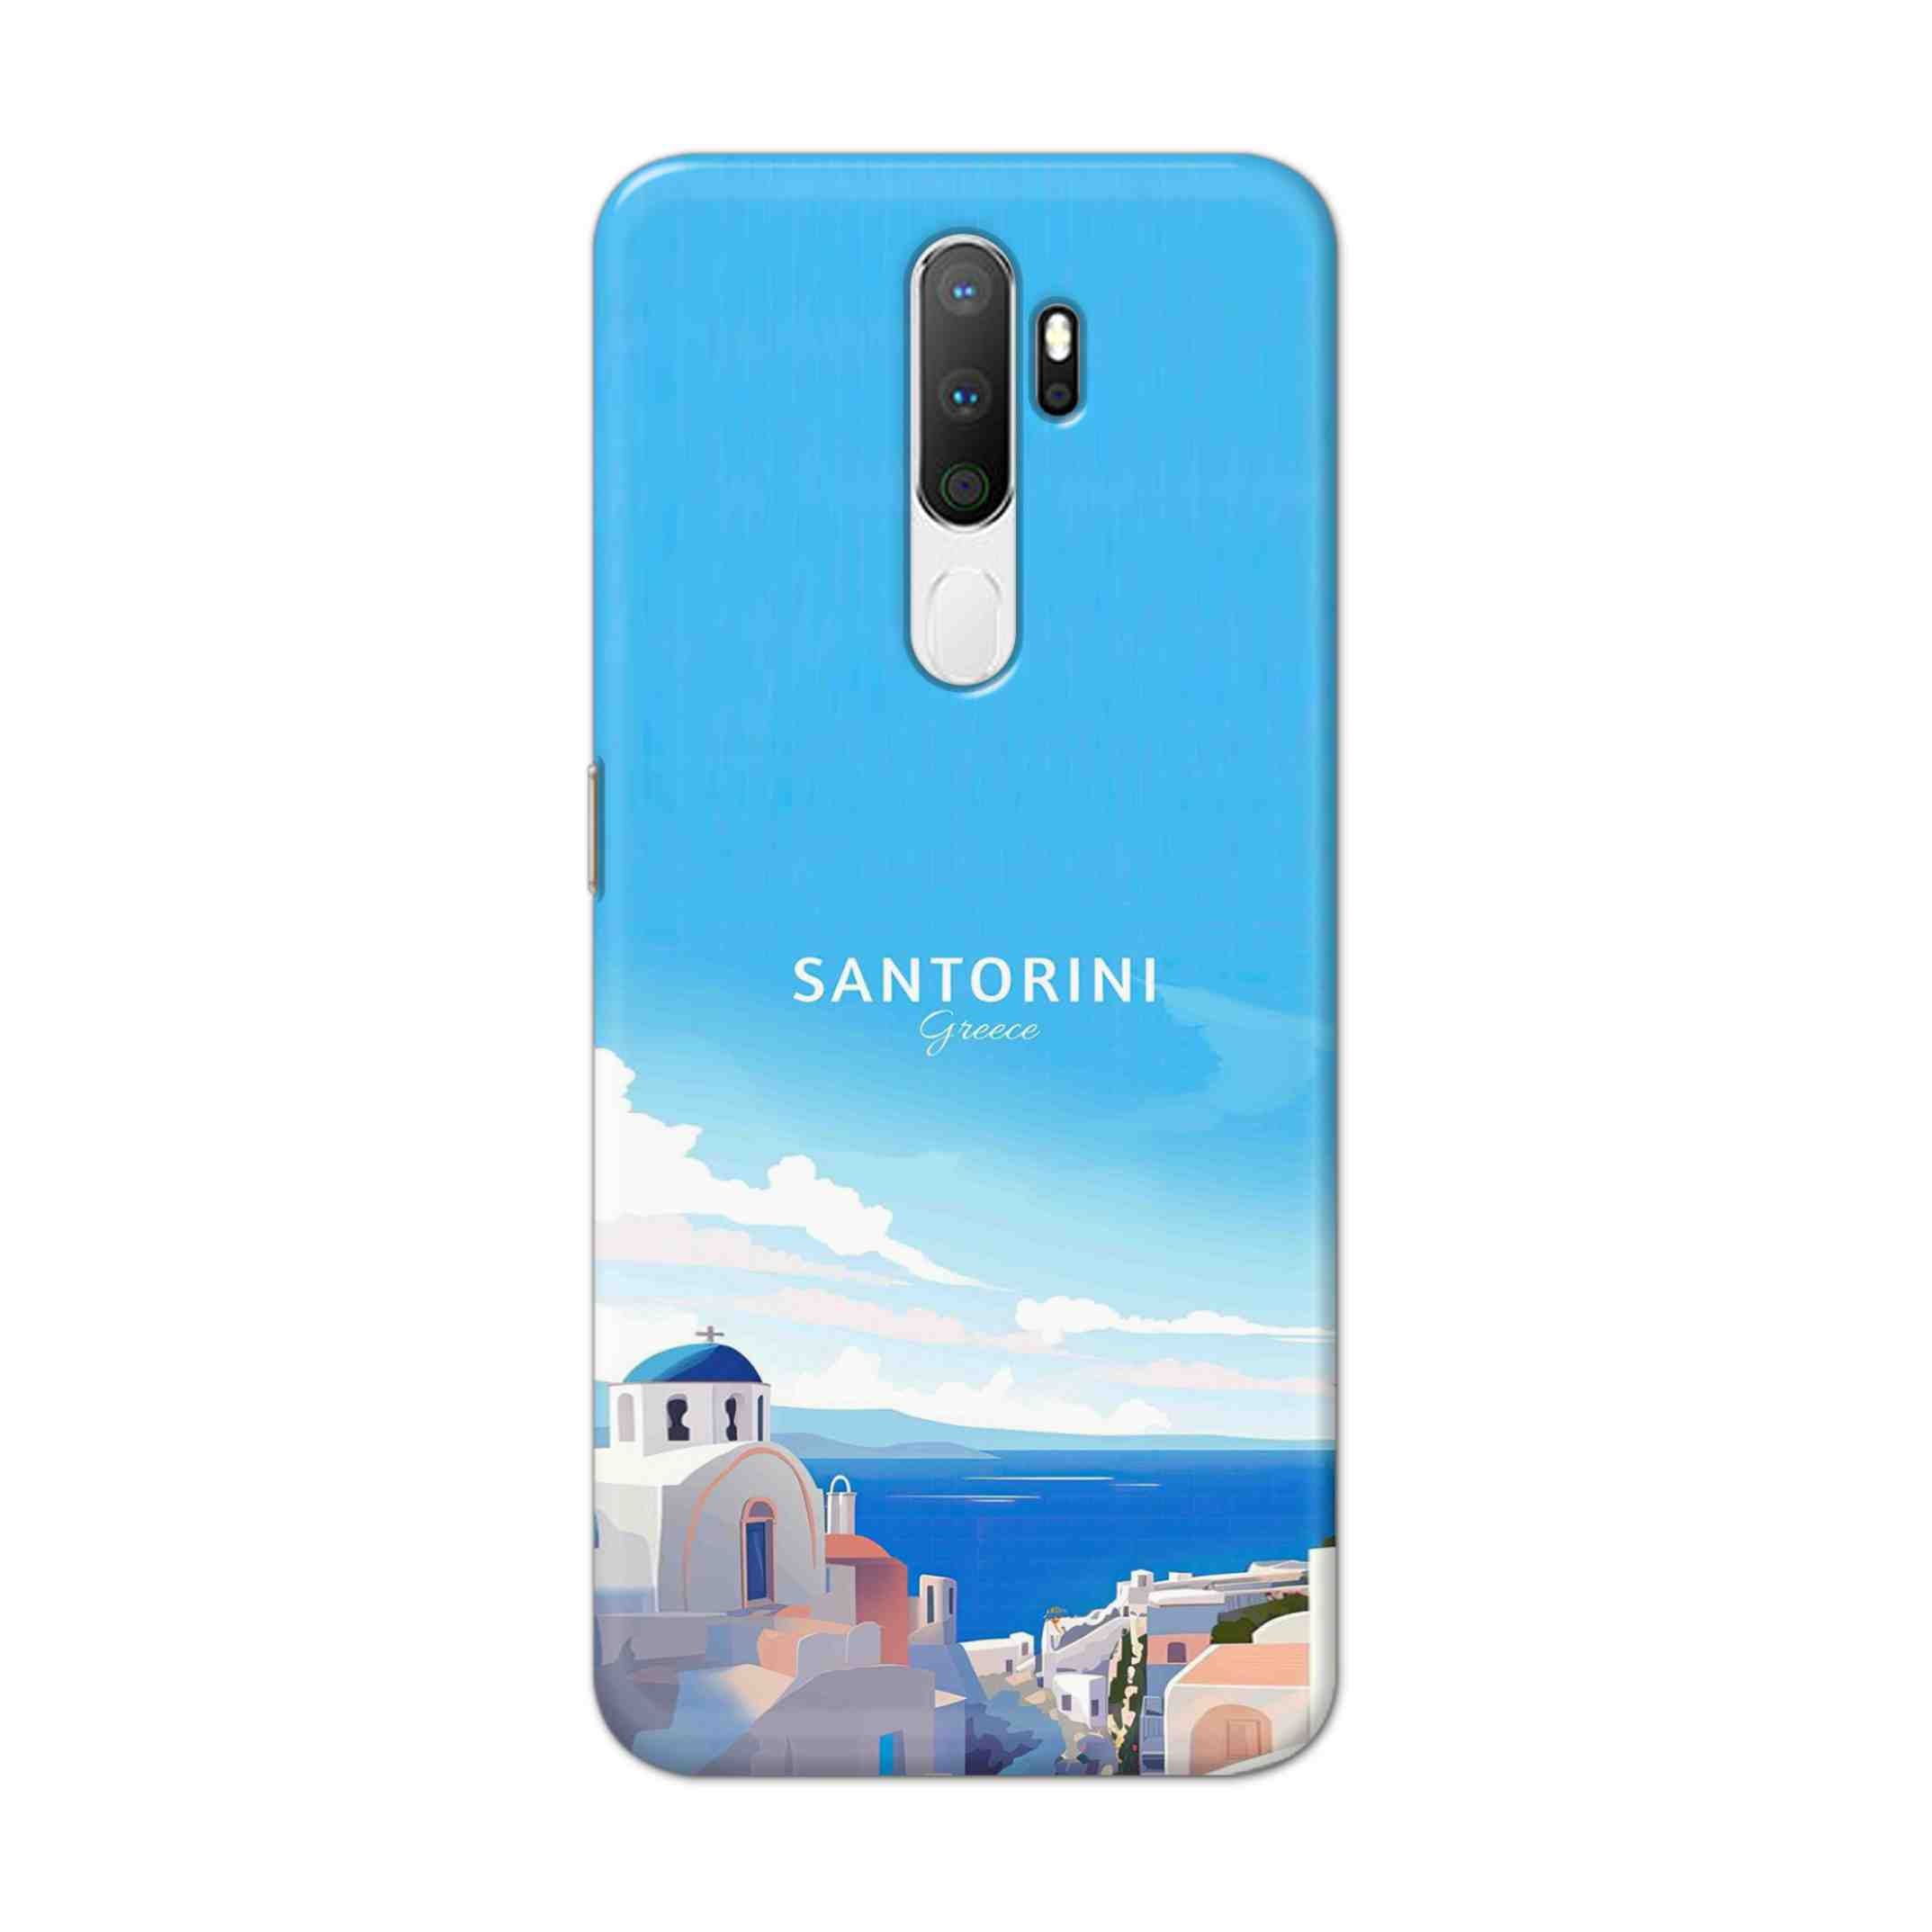 Buy Santorini Hard Back Mobile Phone Case Cover For Oppo A5 (2020) Online